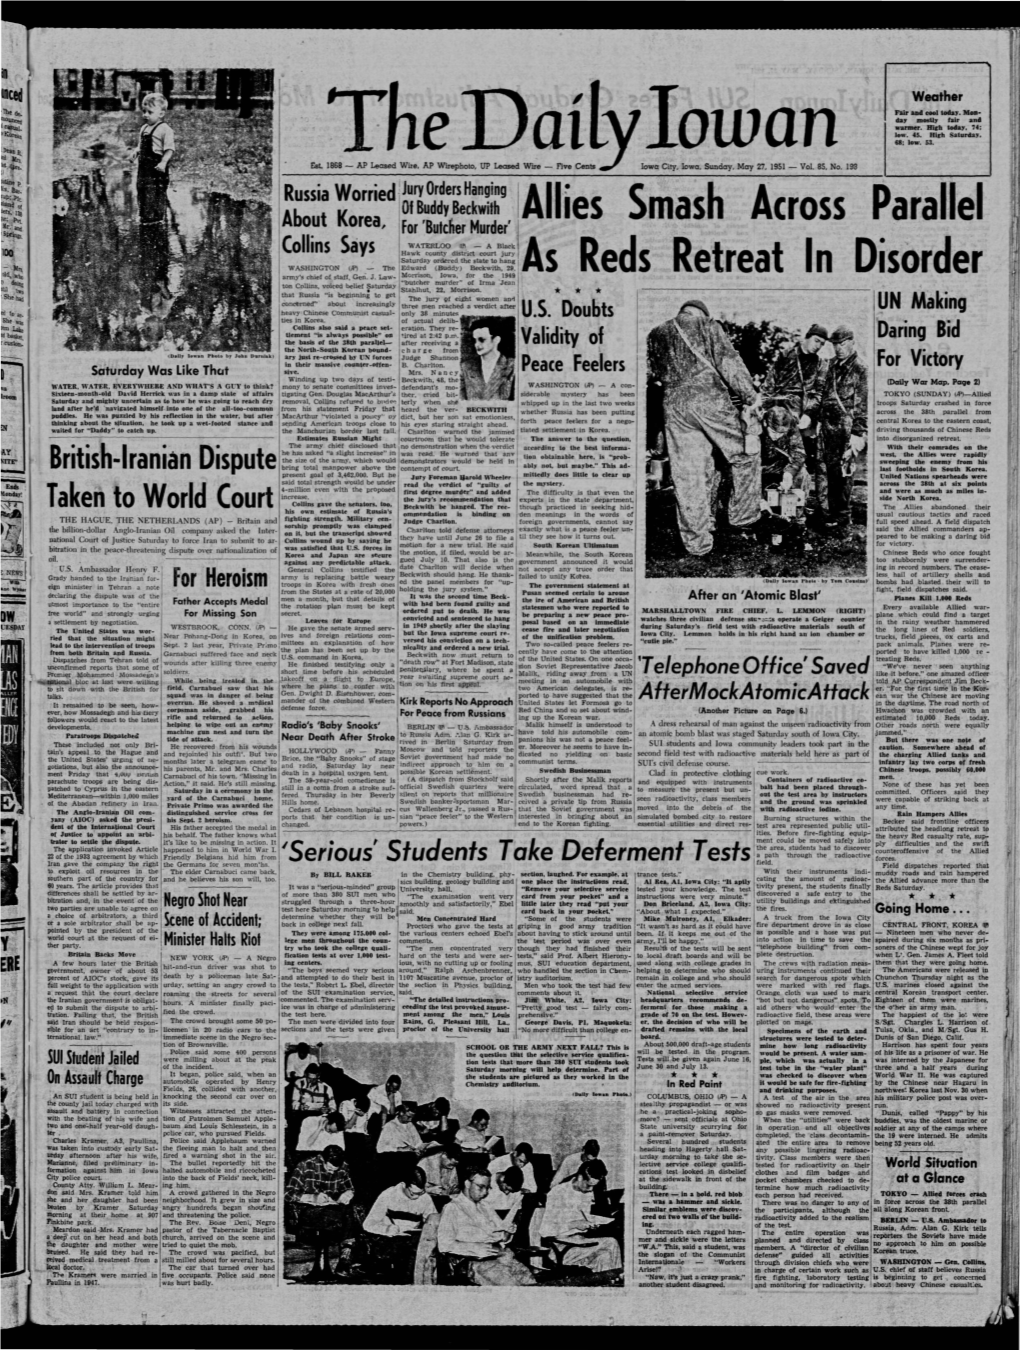 Daily Iowan (Iowa City, Iowa), 1951-05-27